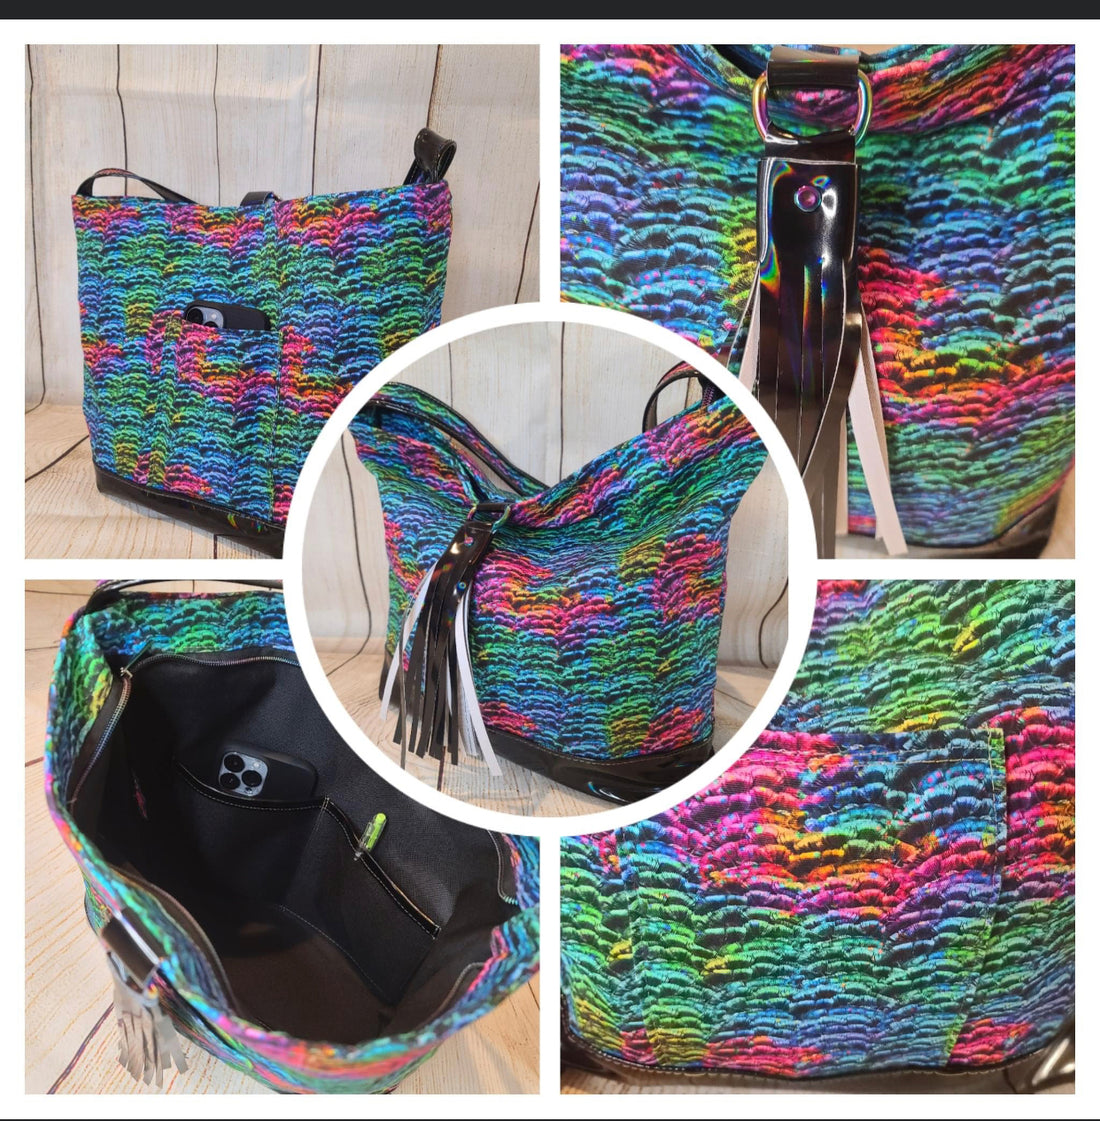 Leslie's Art and Sew: Rainbow Bag